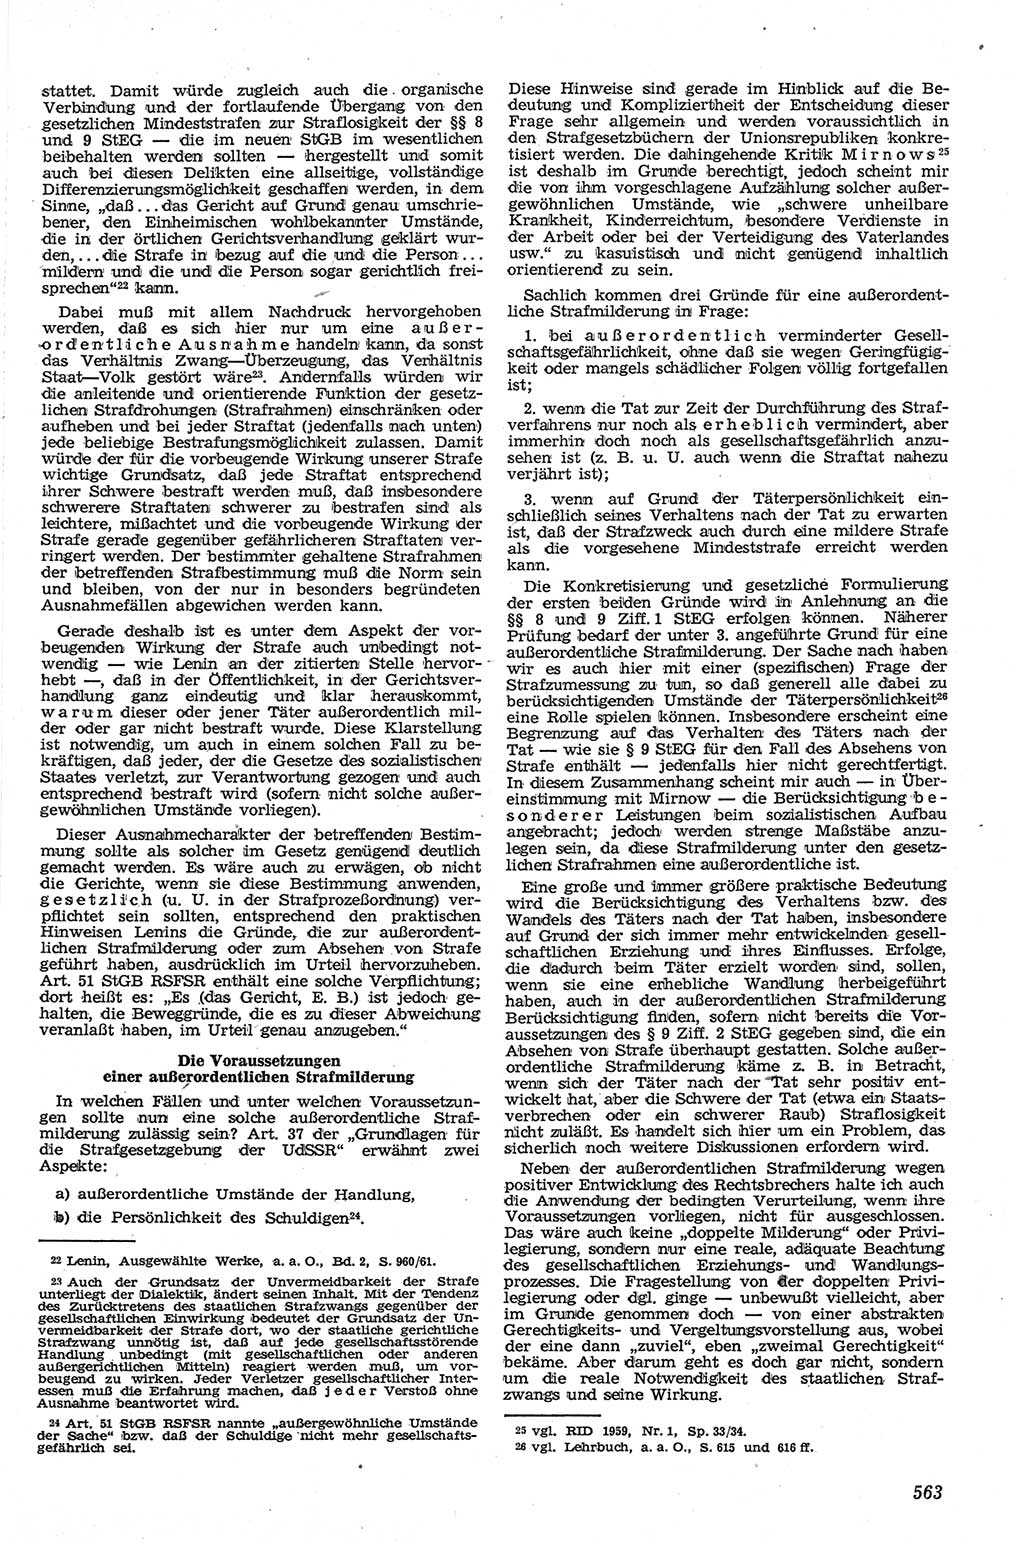 Neue Justiz (NJ), Zeitschrift für Recht und Rechtswissenschaft [Deutsche Demokratische Republik (DDR)], 13. Jahrgang 1959, Seite 563 (NJ DDR 1959, S. 563)